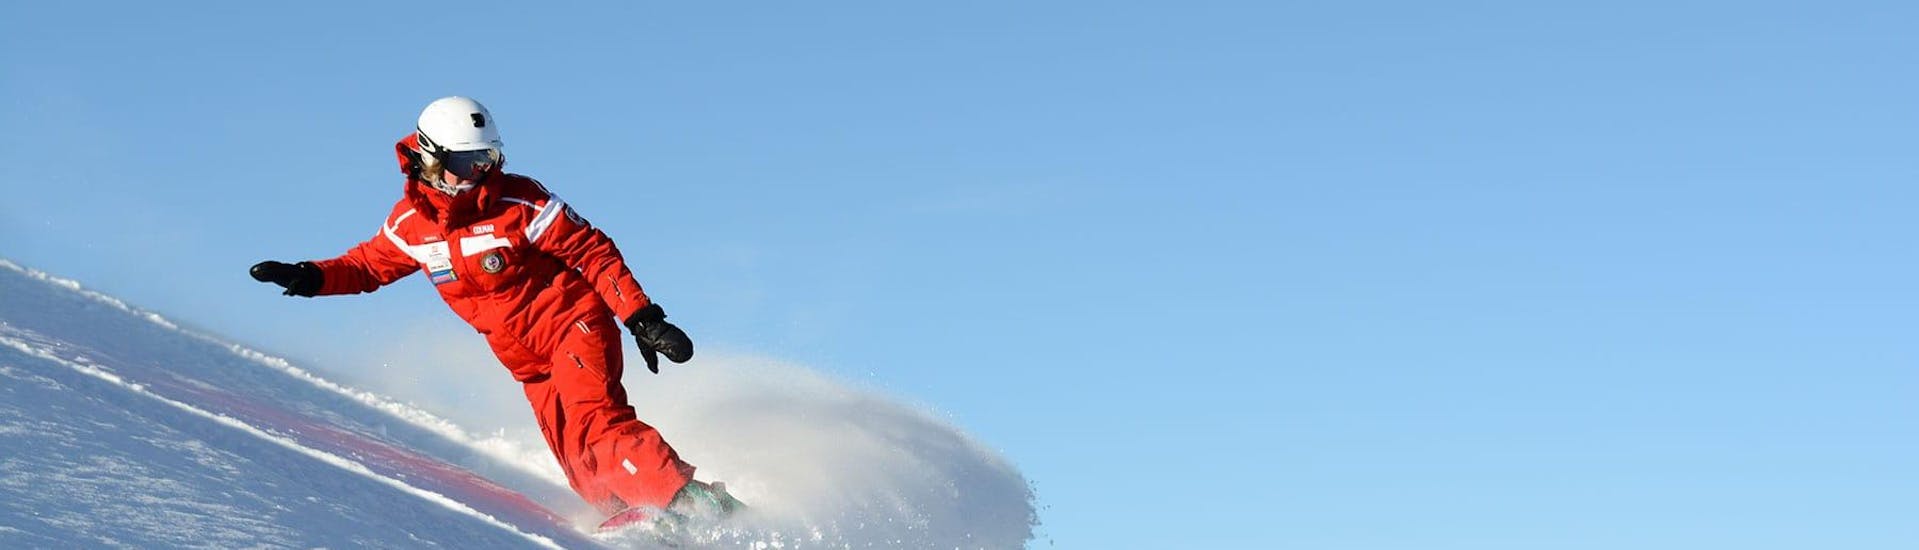 Ein Snowboardlehrer trainiert am frühen Morgen auf den herrlichen Pisten von Gröden. Der perfekte Tag für einen der Snowboardkurse für Kinder und Erwachsene.